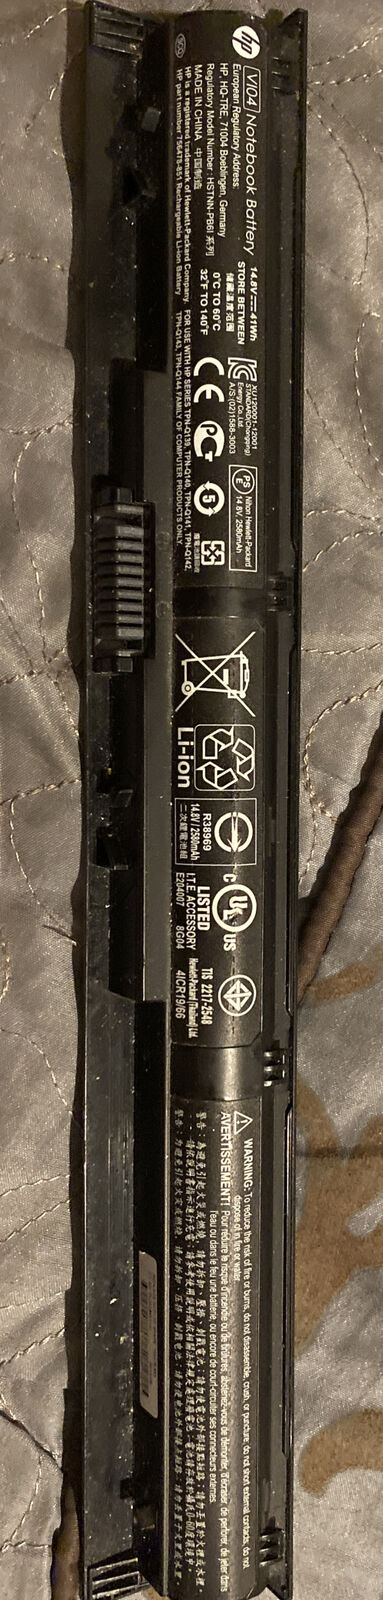 OEM Genuine VI04 Battery For HP 756478-851